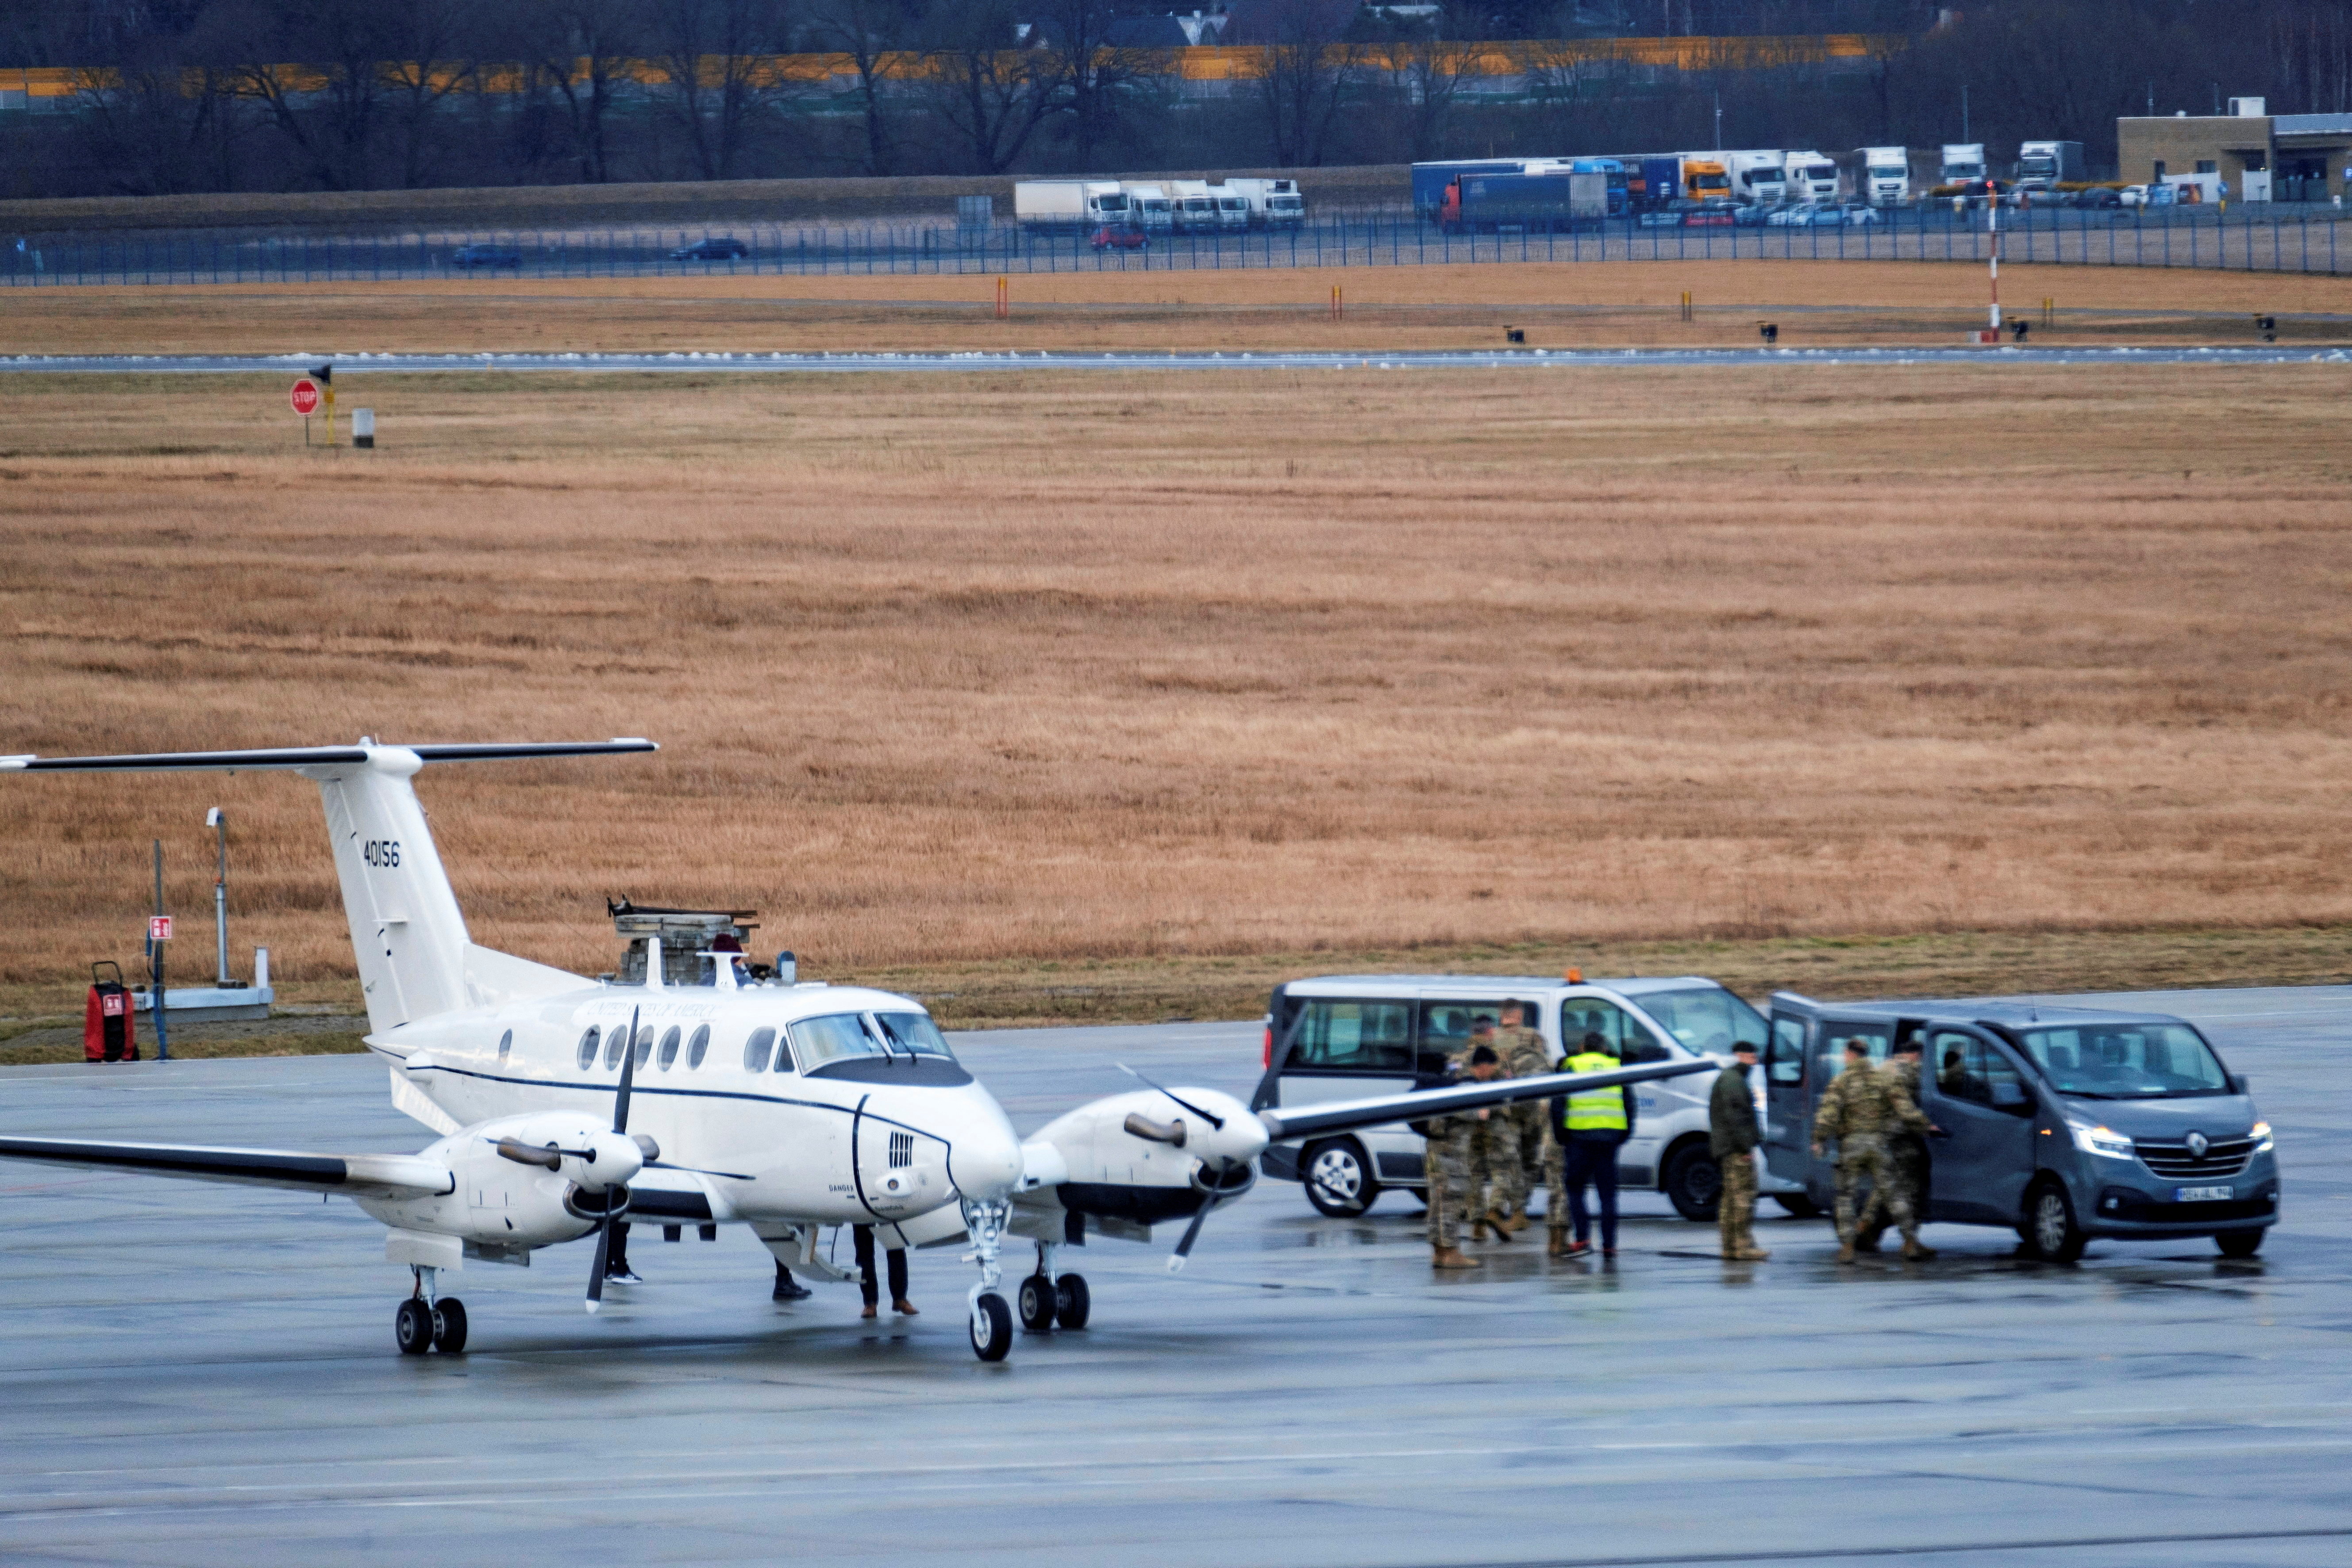 A U.S. Air Force plane lands at Rzeszow-Jasionka Airport near Rzeszow